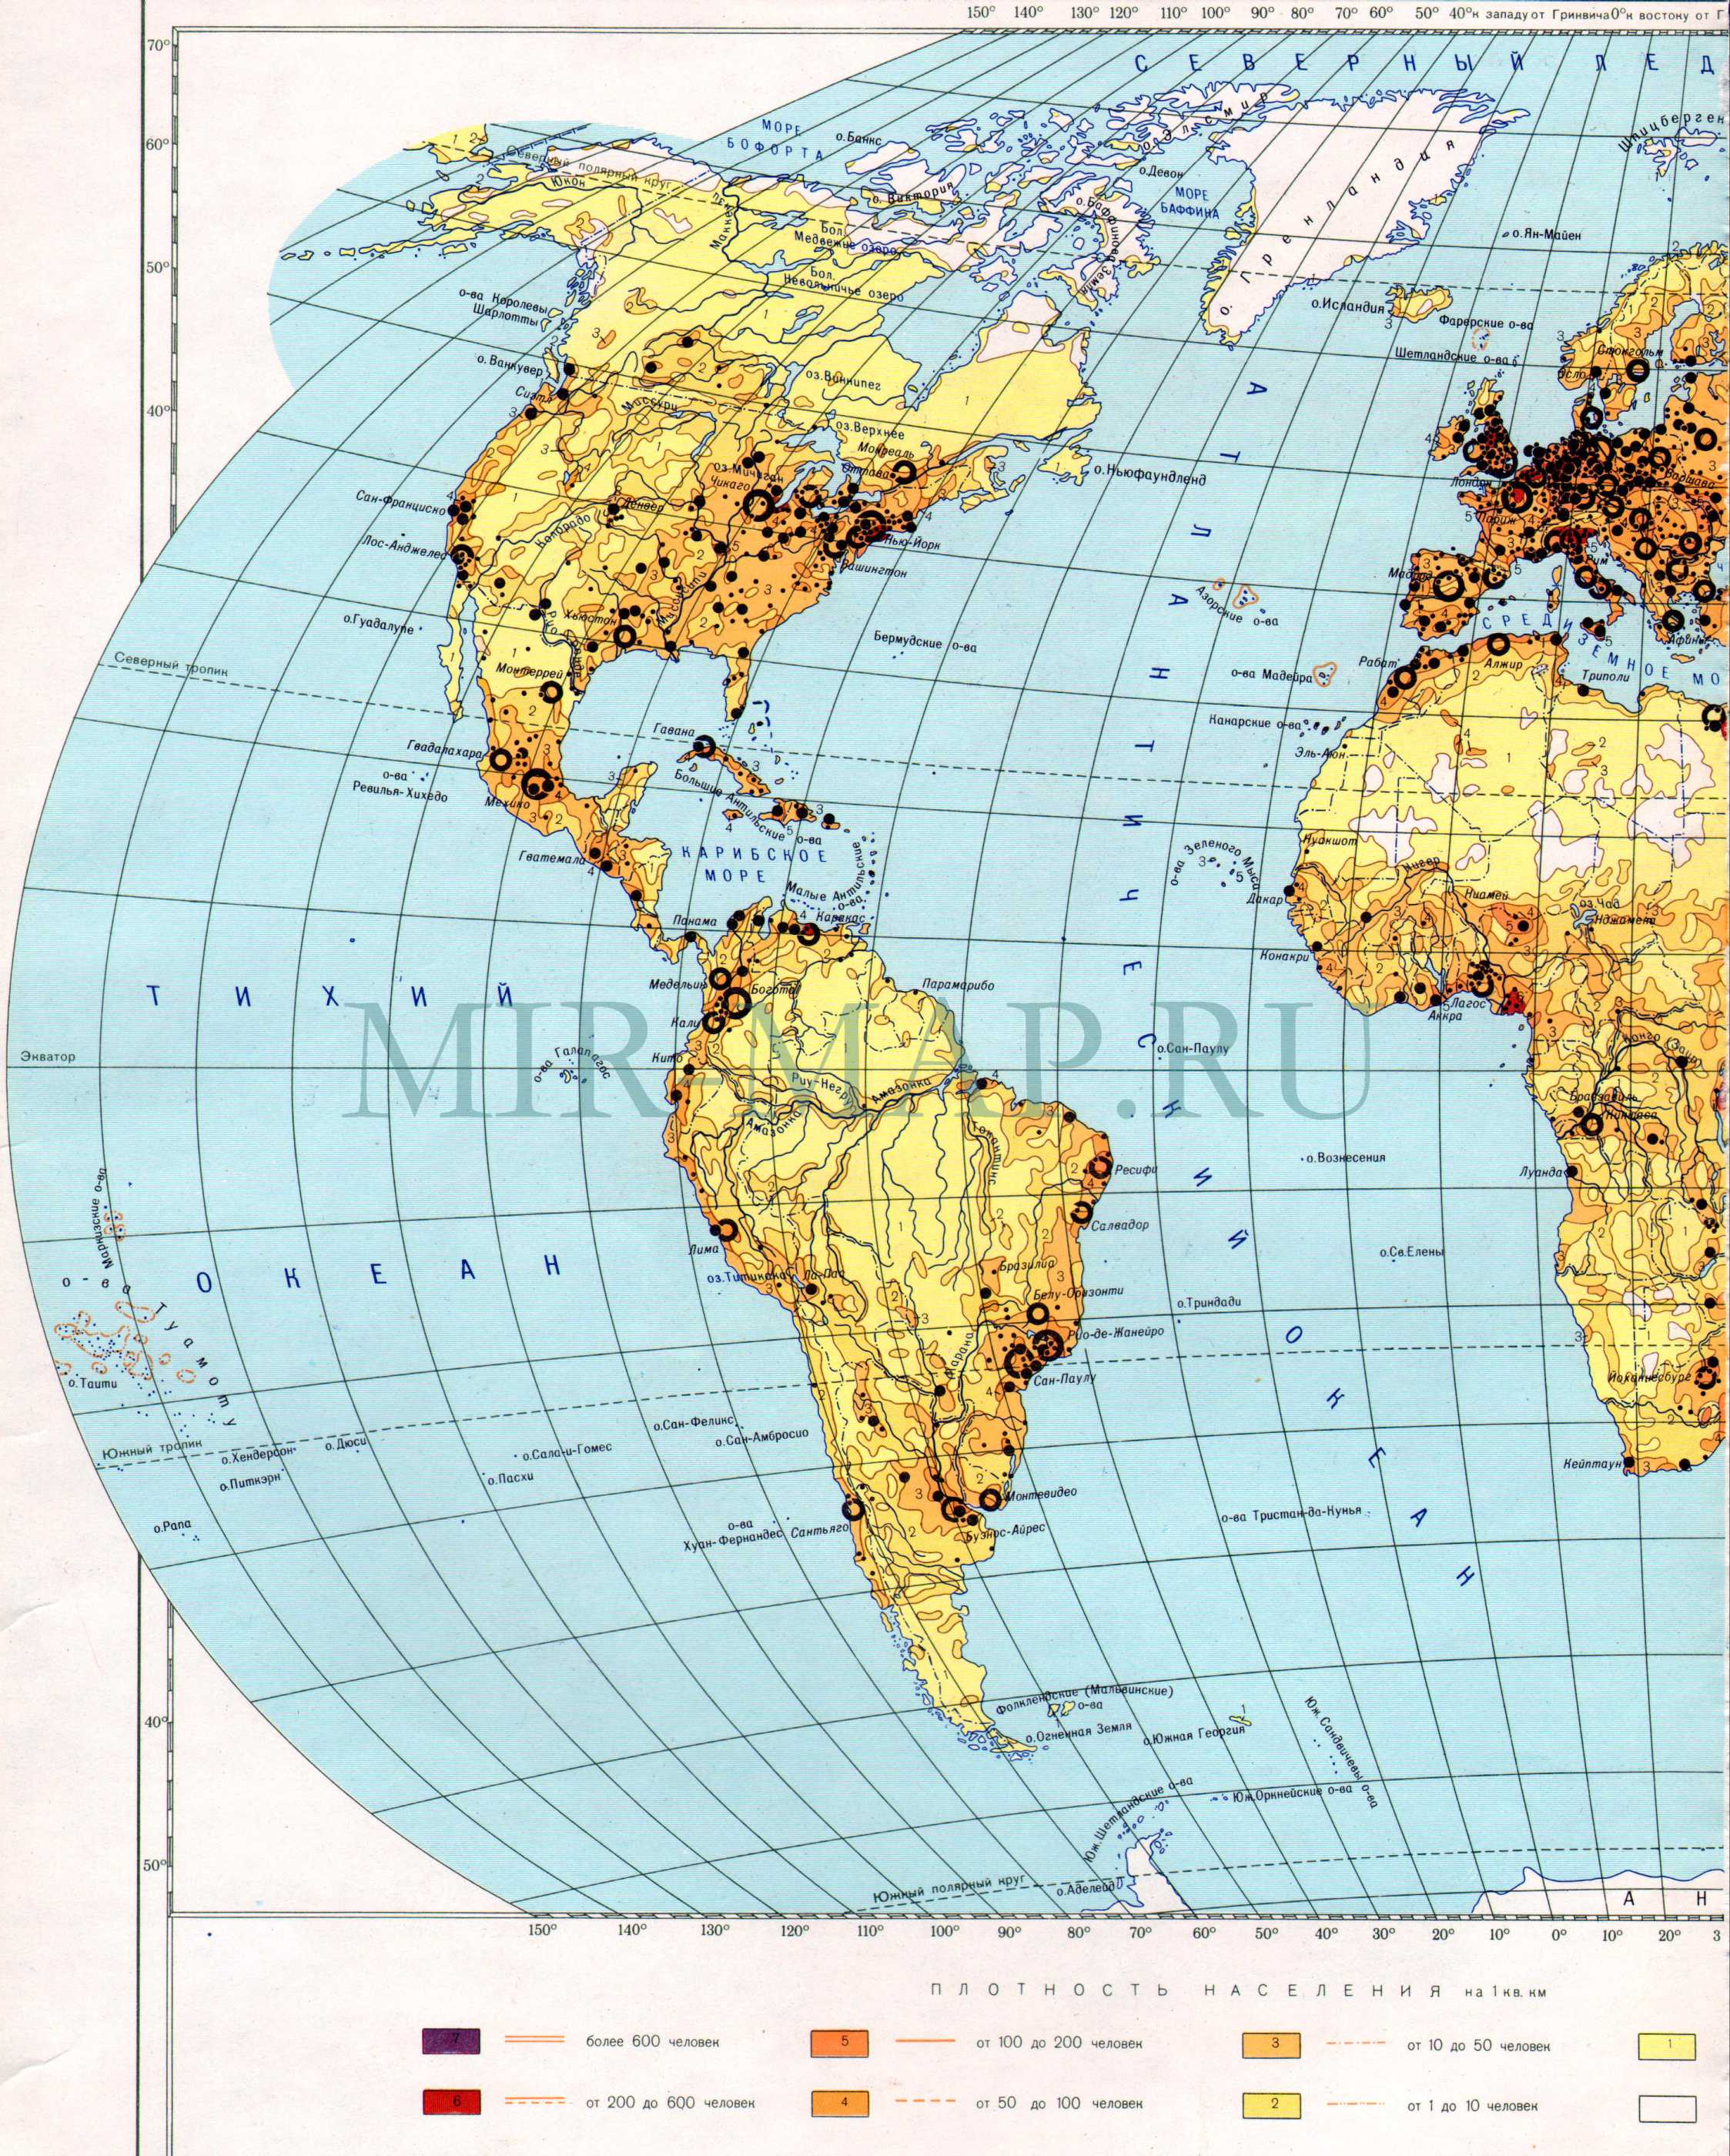 Карта плотности населения на земном шаре. Карта мира масштаба 1см:750км - плотность населения, A0 - 